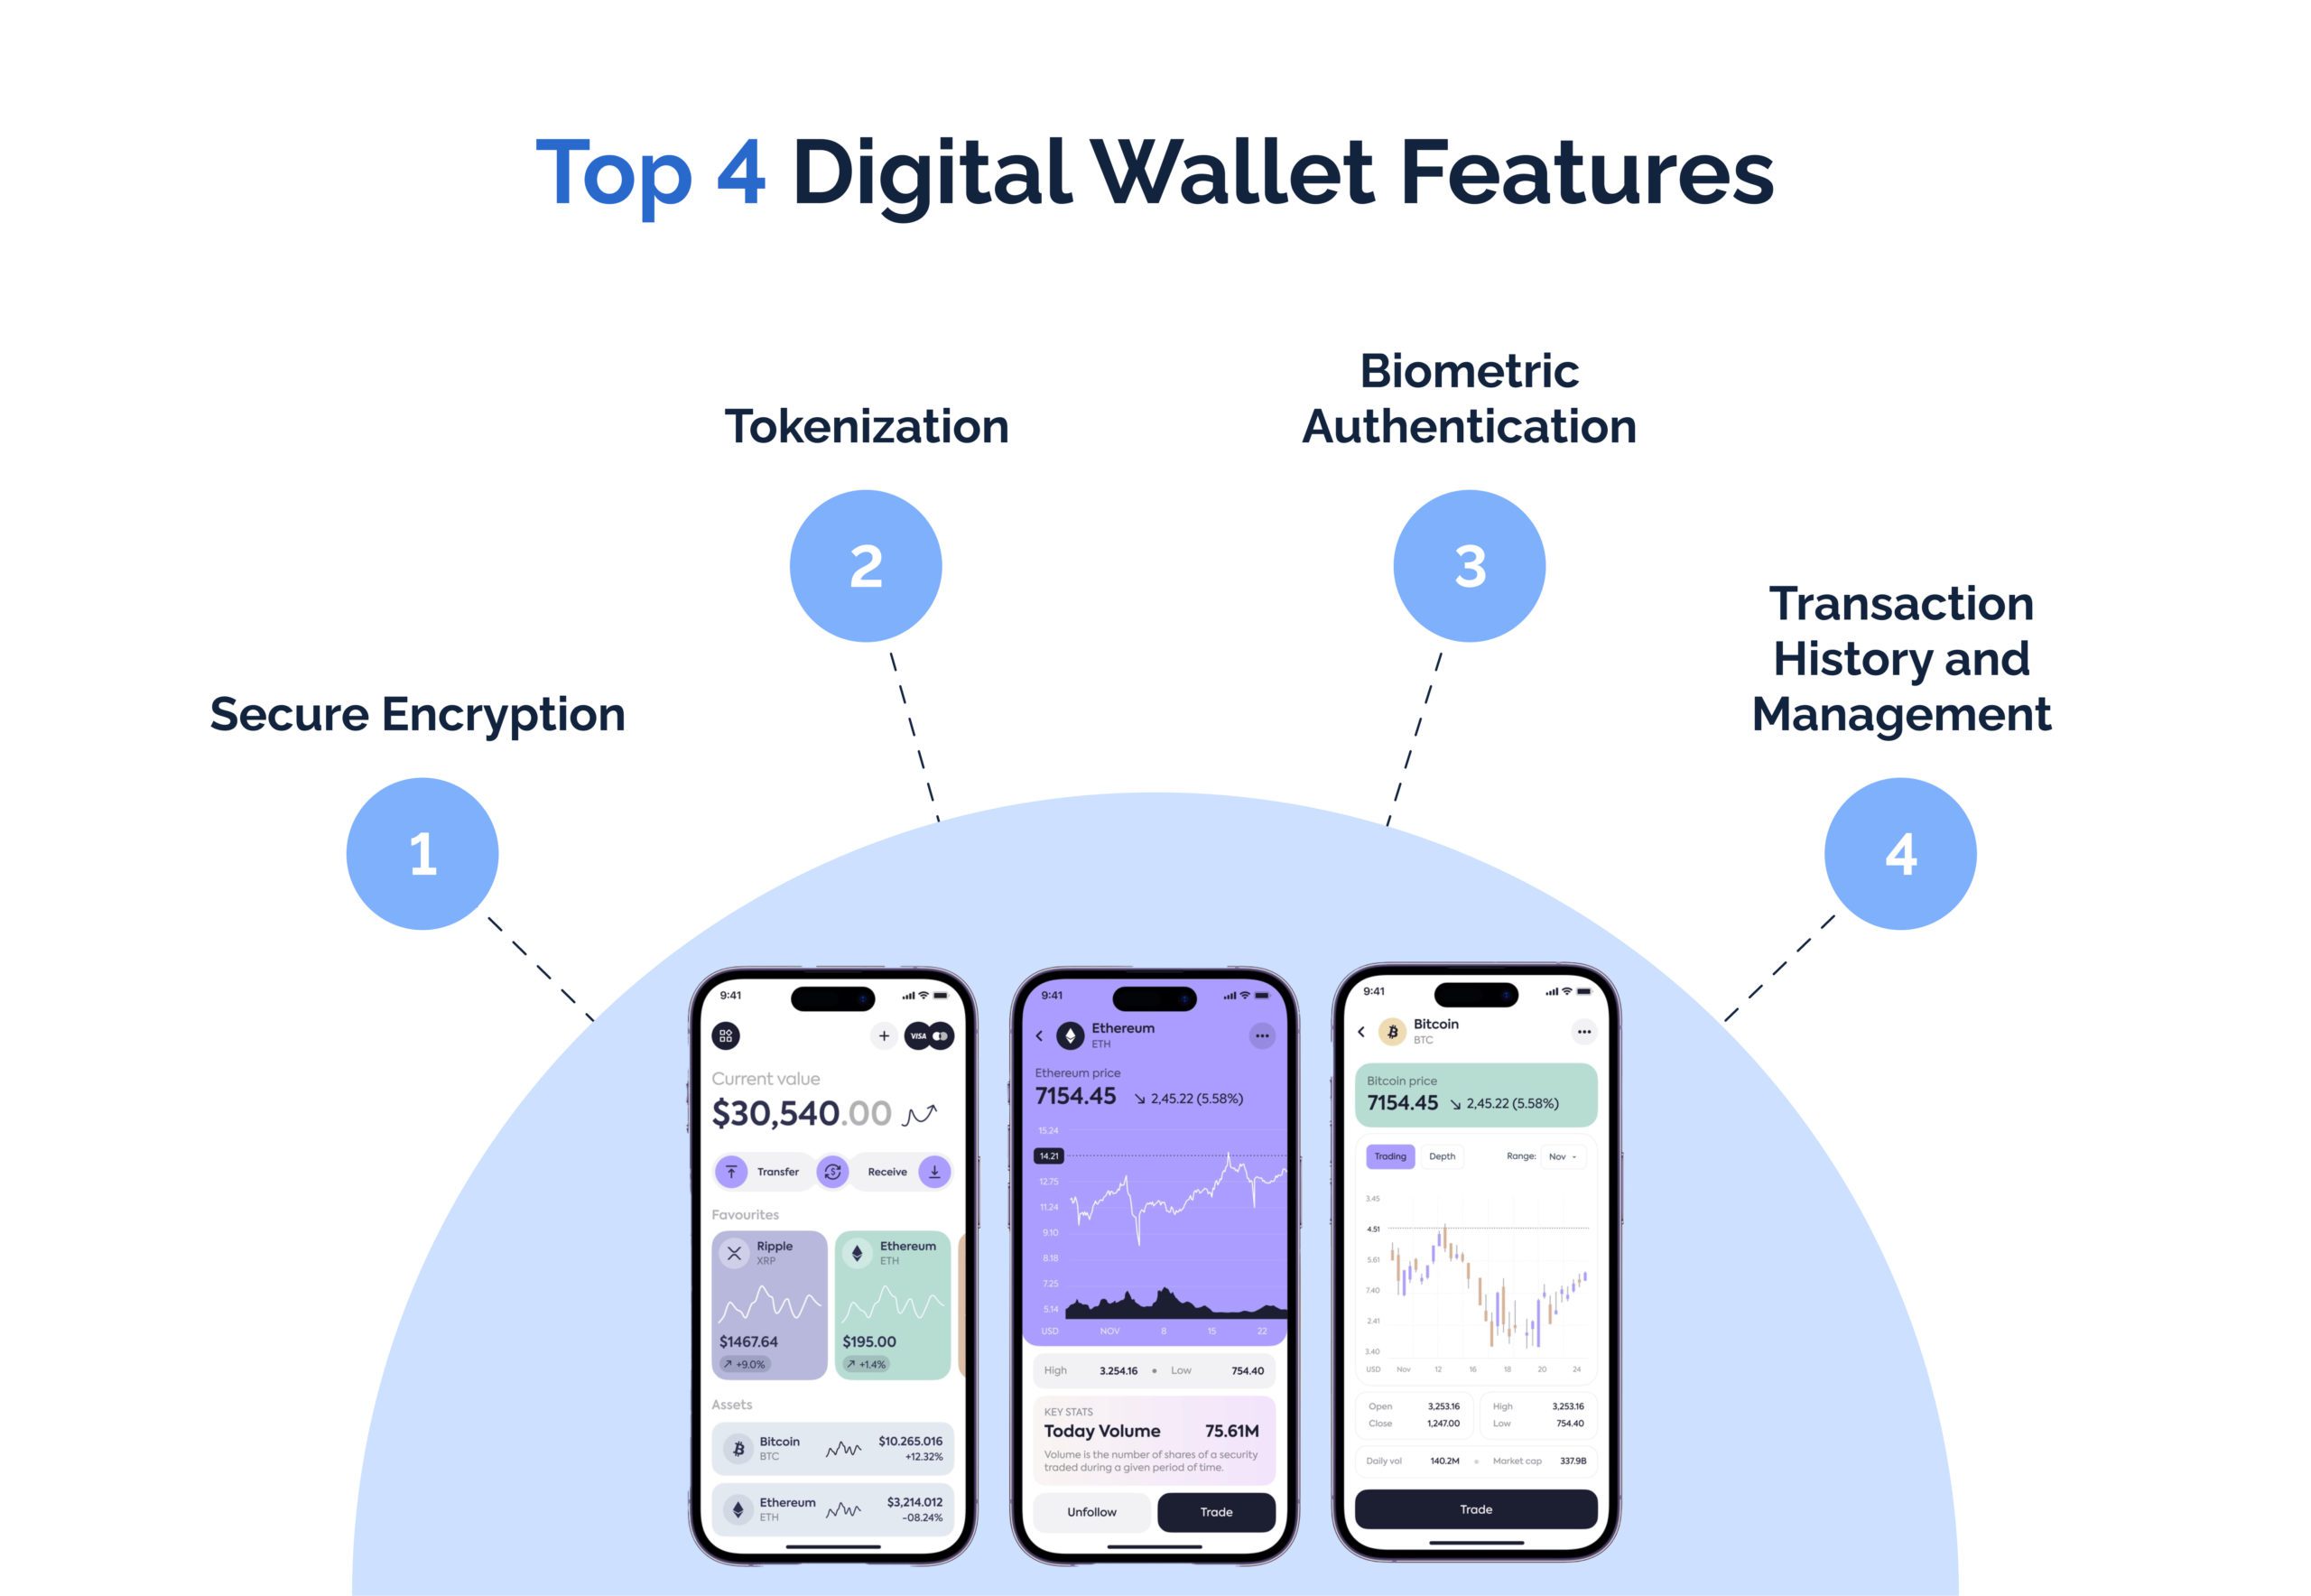 Top 4 Digital Wallet Features